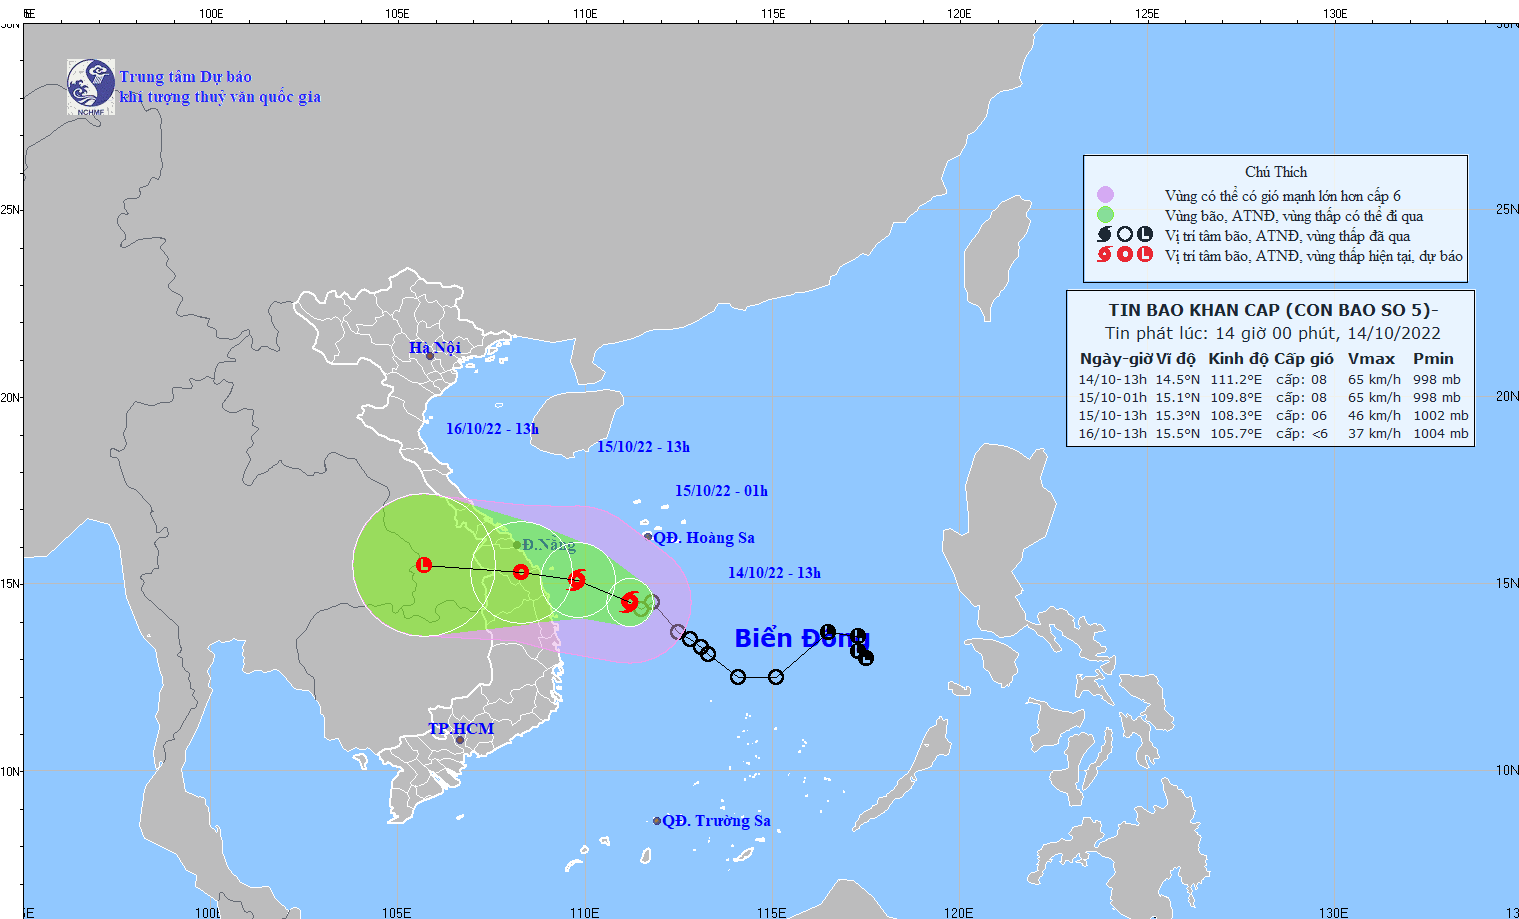 Ấp thấp nhiệt đới mạnh lên thành bão số 5, các tỉnh miền Trung đang mưa rất to